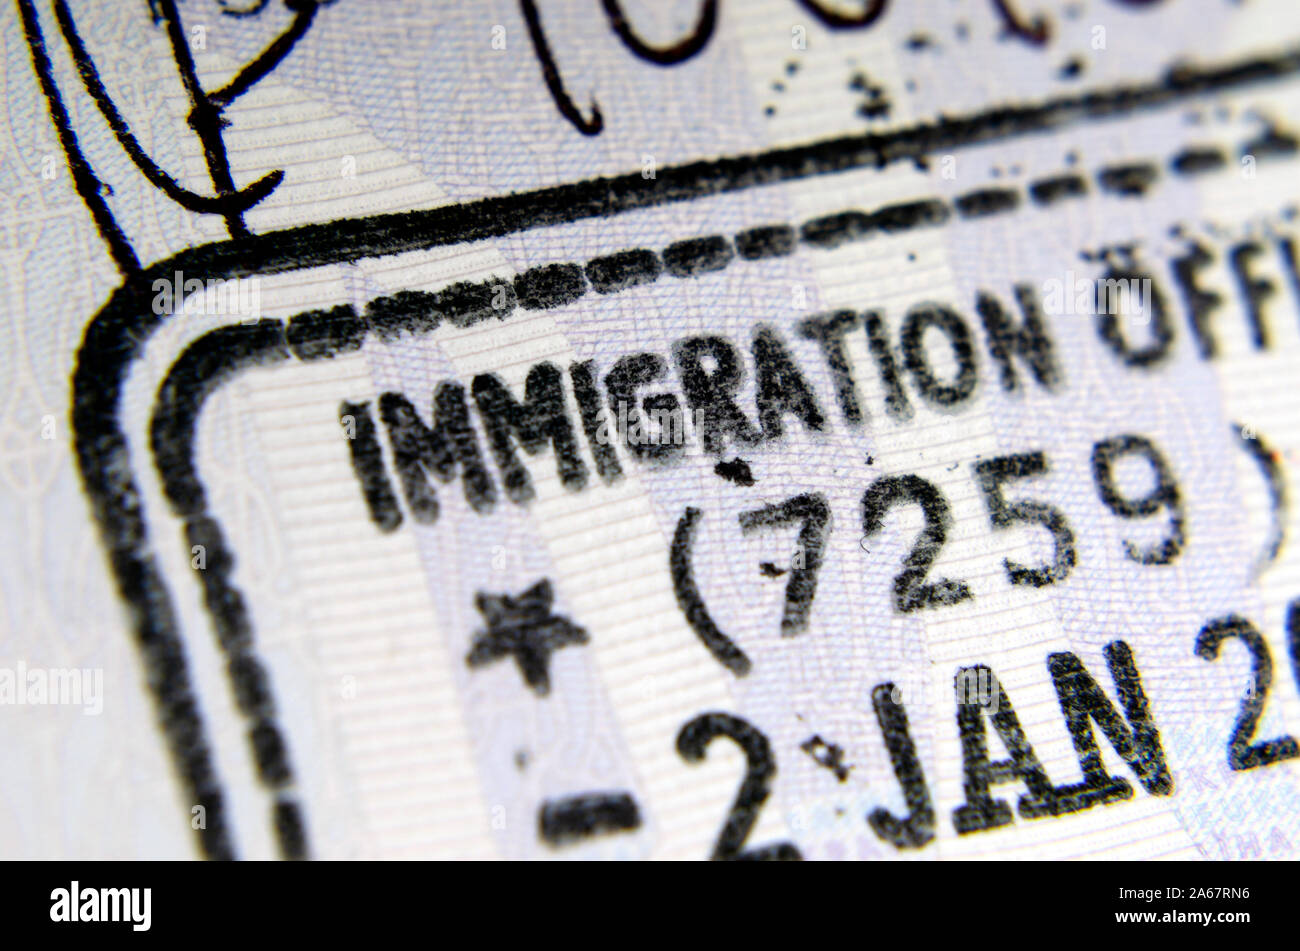 L'entrée de l'immigration britannique stamp dans le passeport où les seuls les lettres 'OFF' de l'immigration visible de l'ensemble de l'expression "agent de l'immigration". Concept fort. Banque D'Images